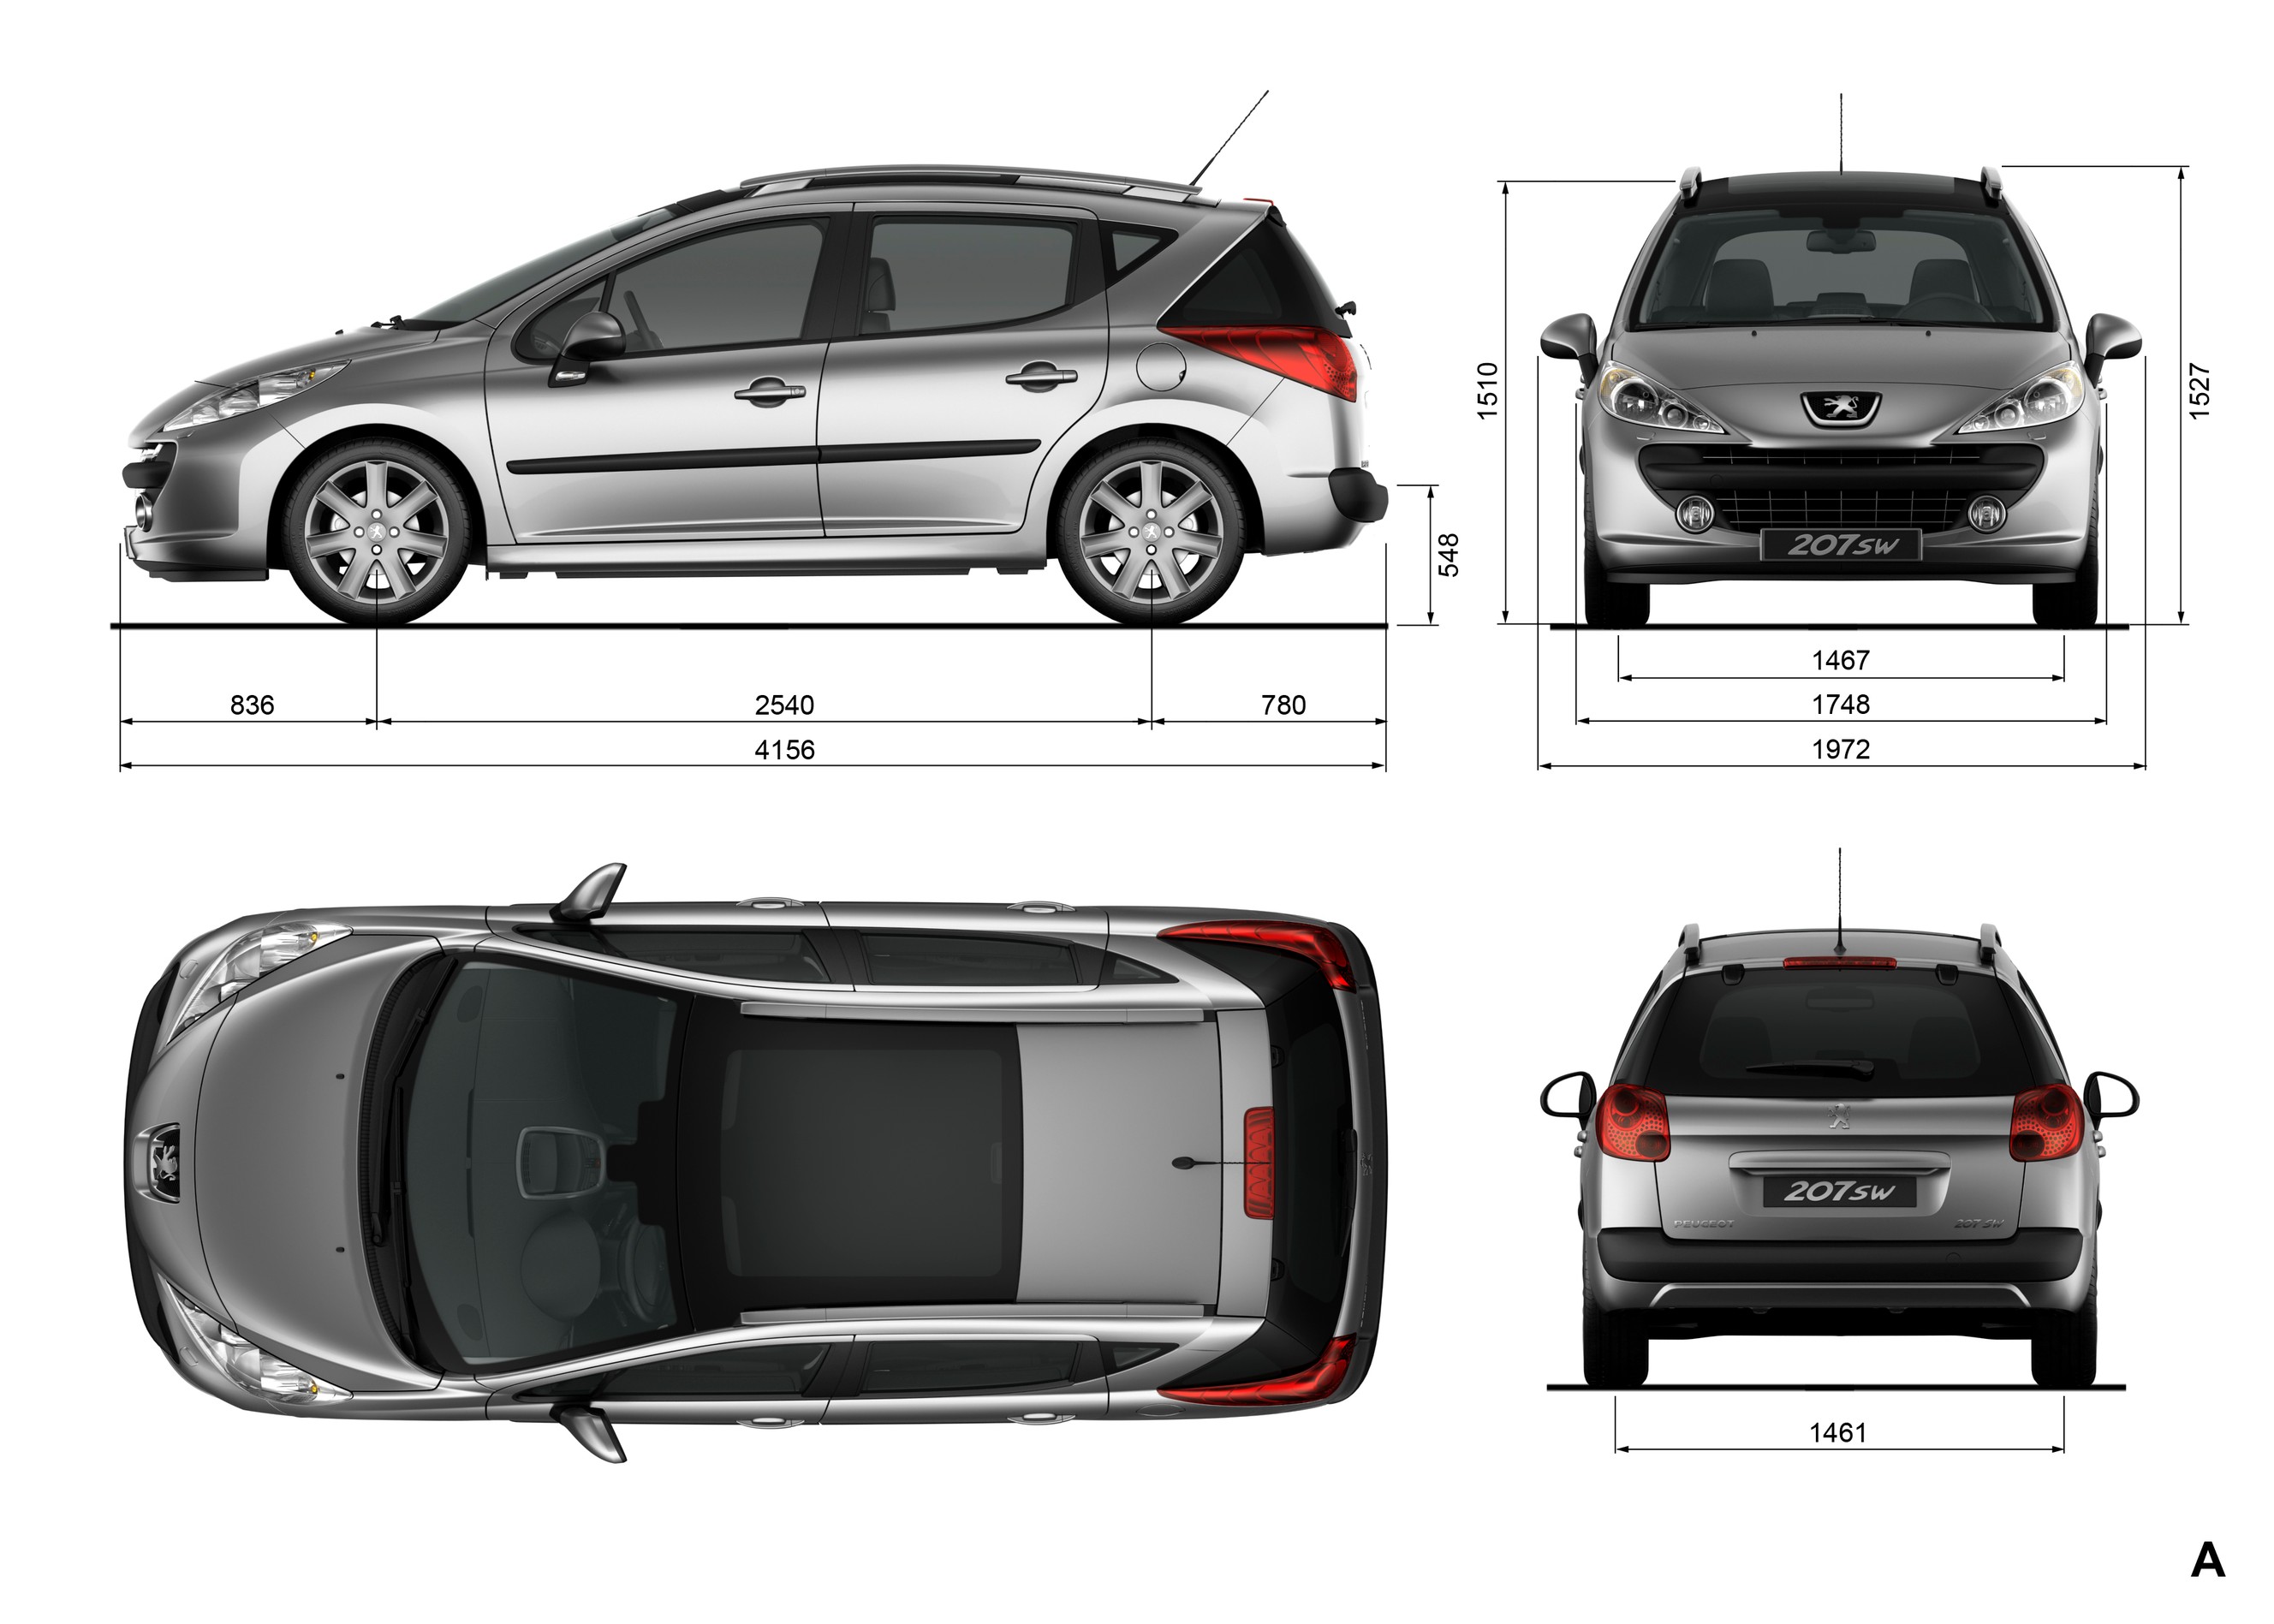 🔎 Peugeot 207 : définition et explications